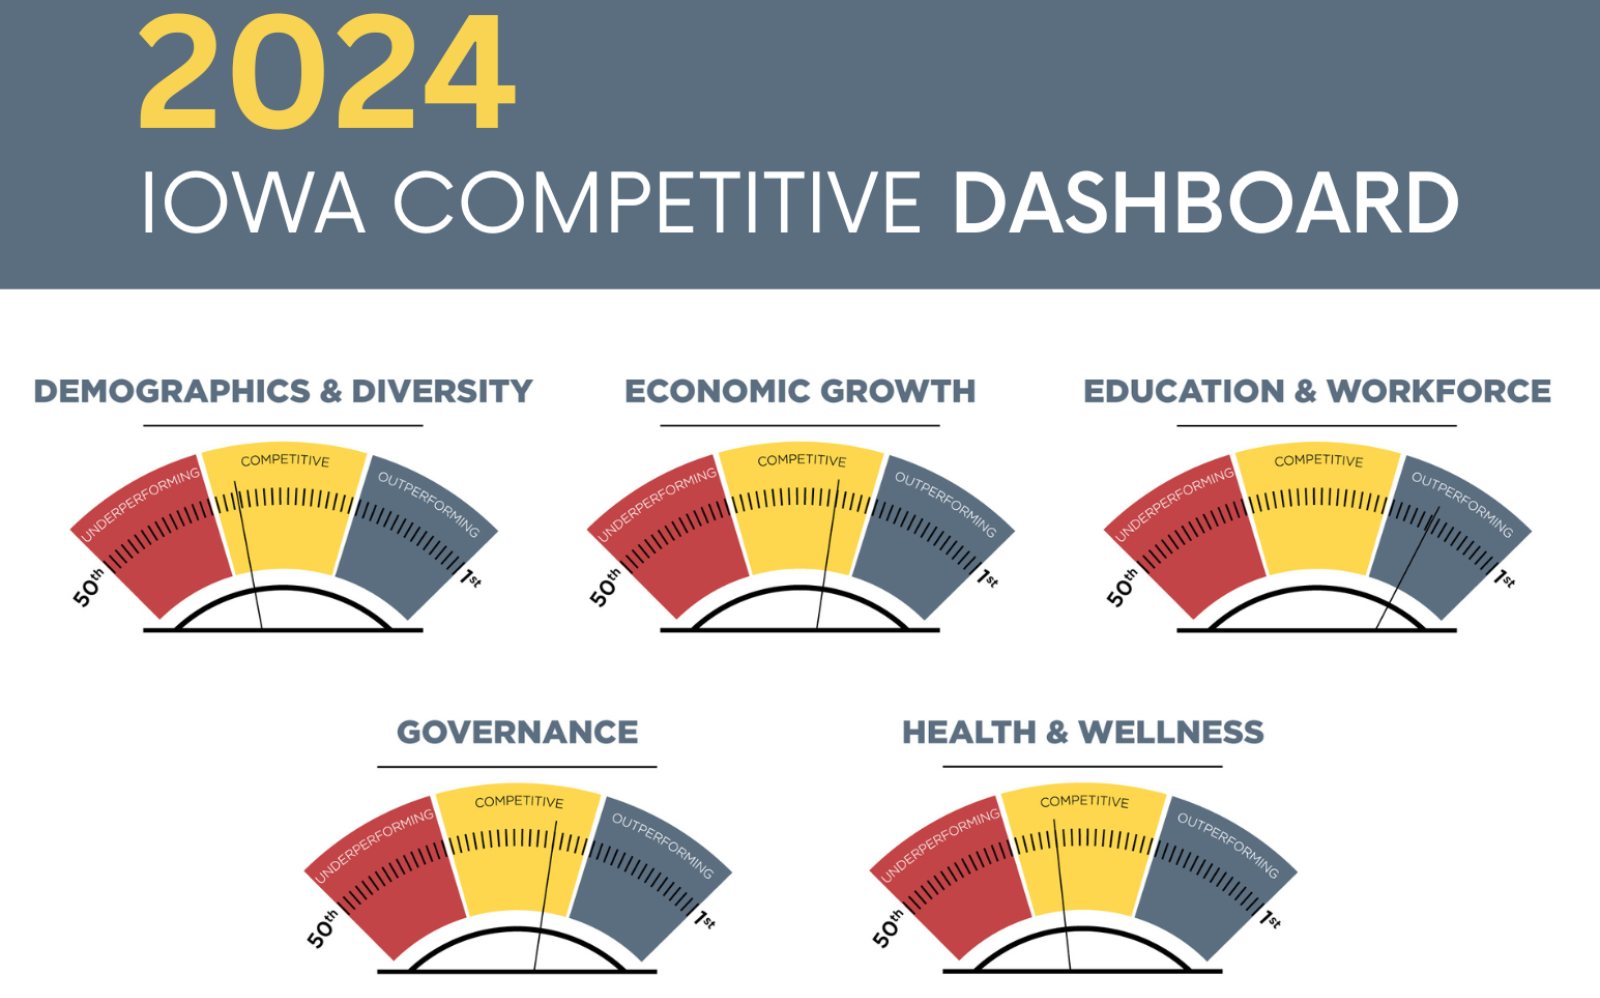 Iowa's Competitive Dashboard 2024